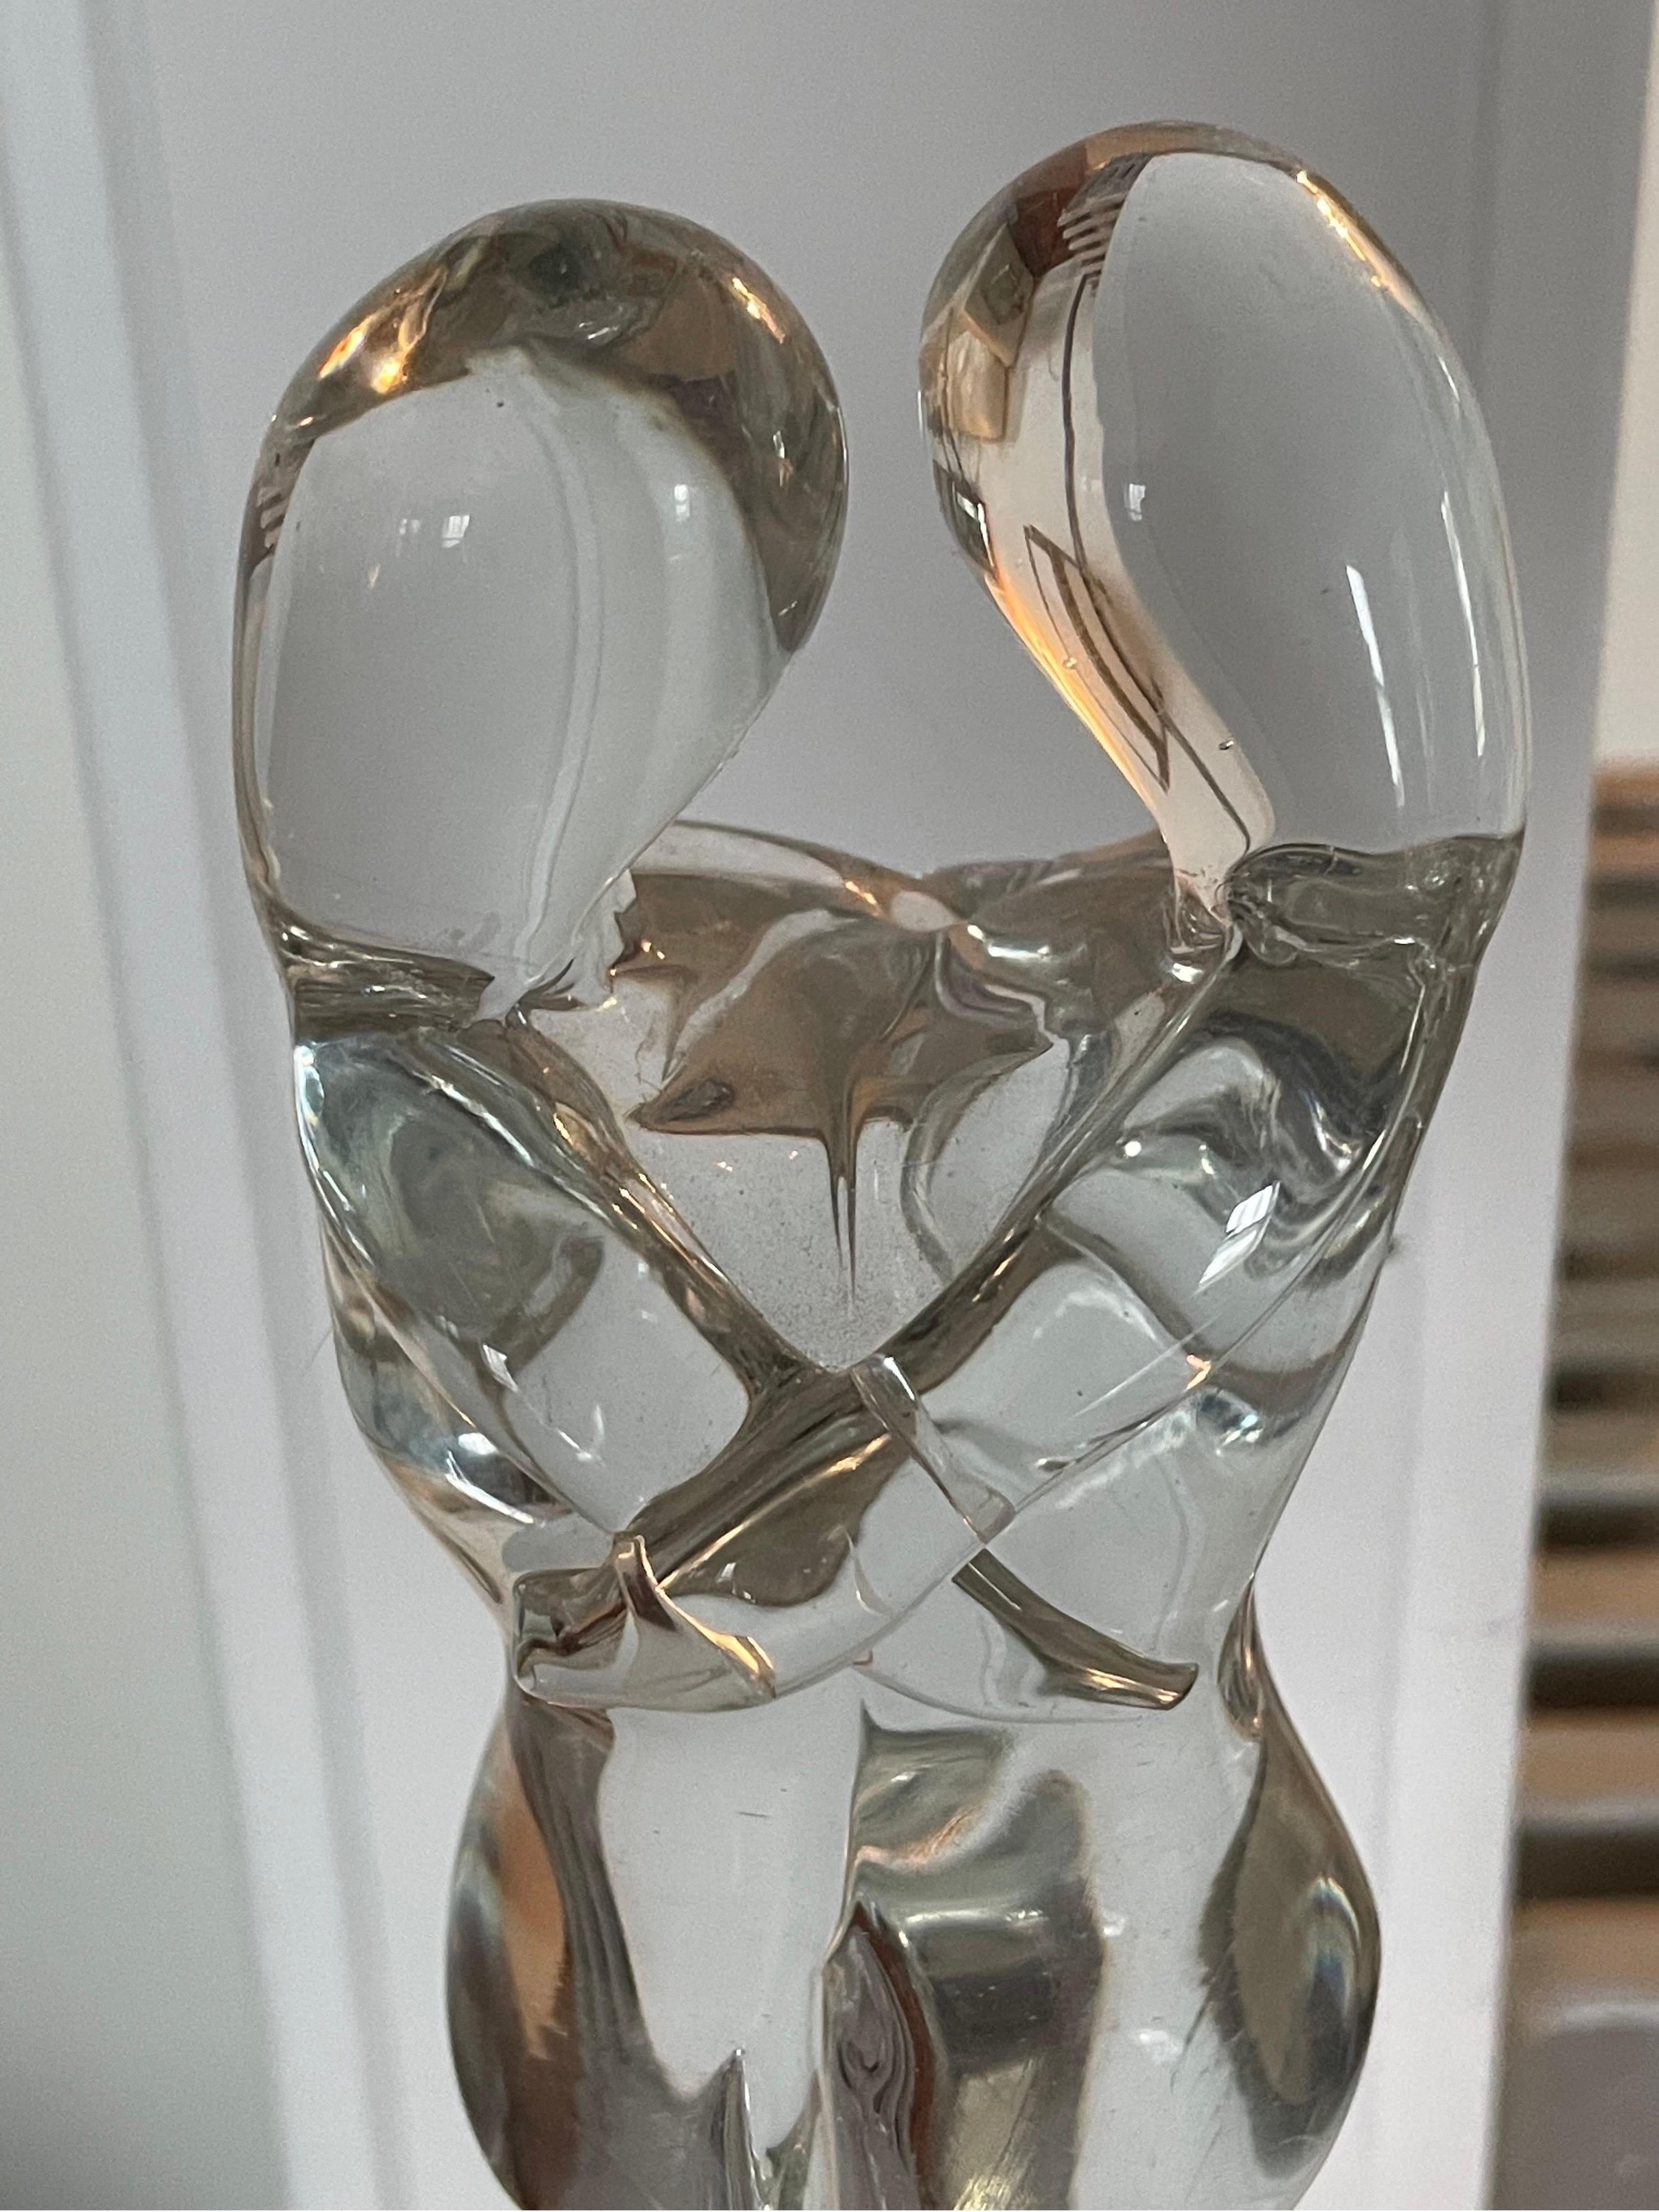 Für Ihre Betrachtung, ein Mario Badioli für Oggetti Murano Italien Kunstglas-Skulptur. Ein sich umarmendes Paar in einem abstrakten Design auf einem schwarzen Glassockel. Mit original Oggetti-Aufkleber und Künstlersignatur.